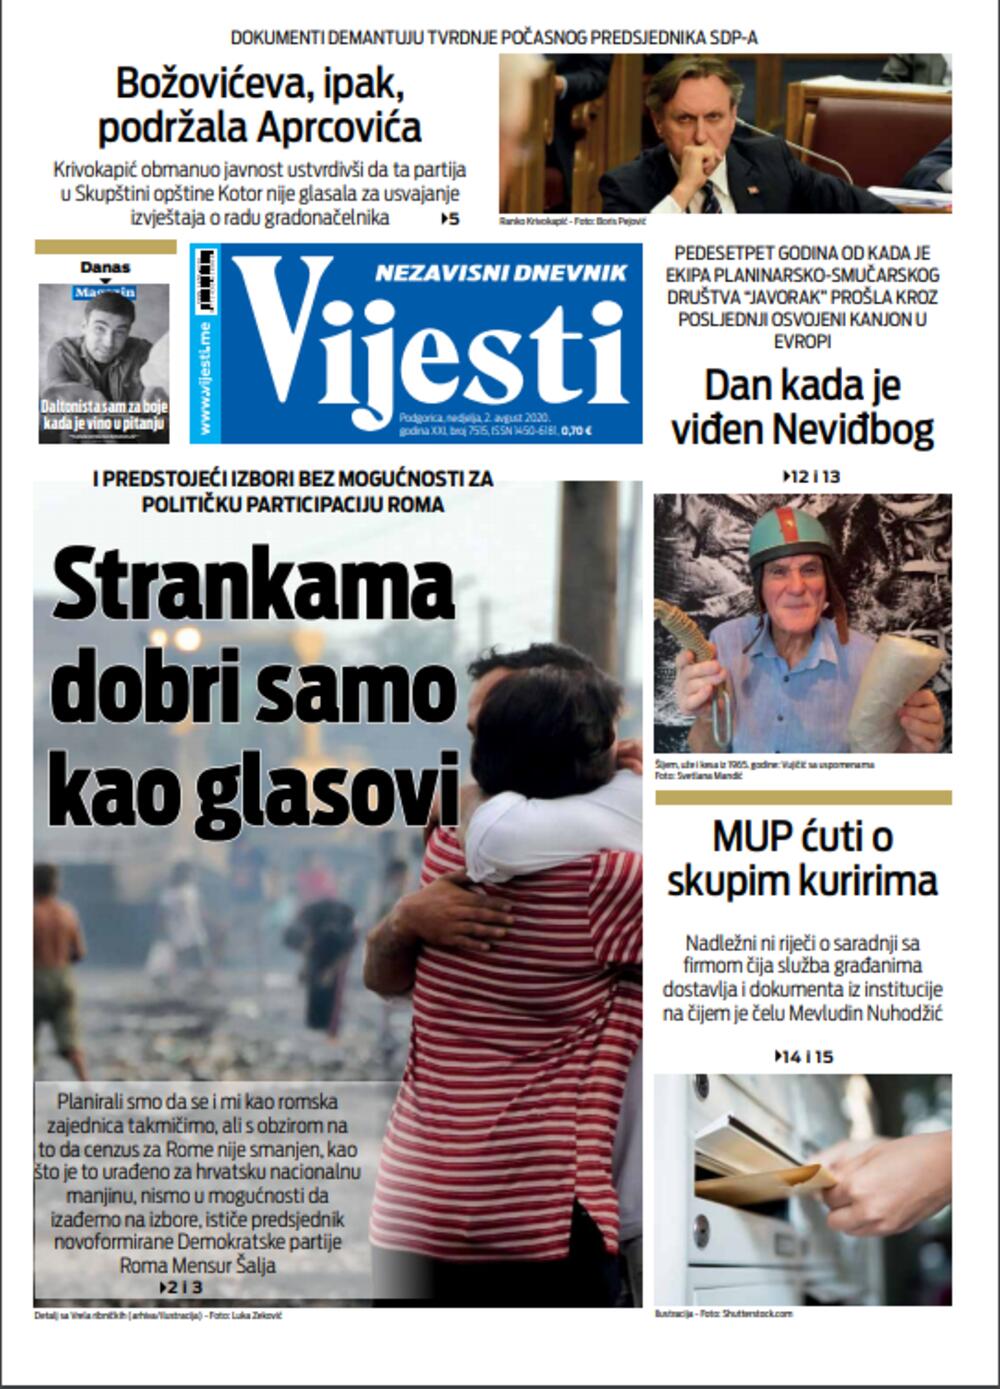 Naslovna strana, Foto: Vijesti